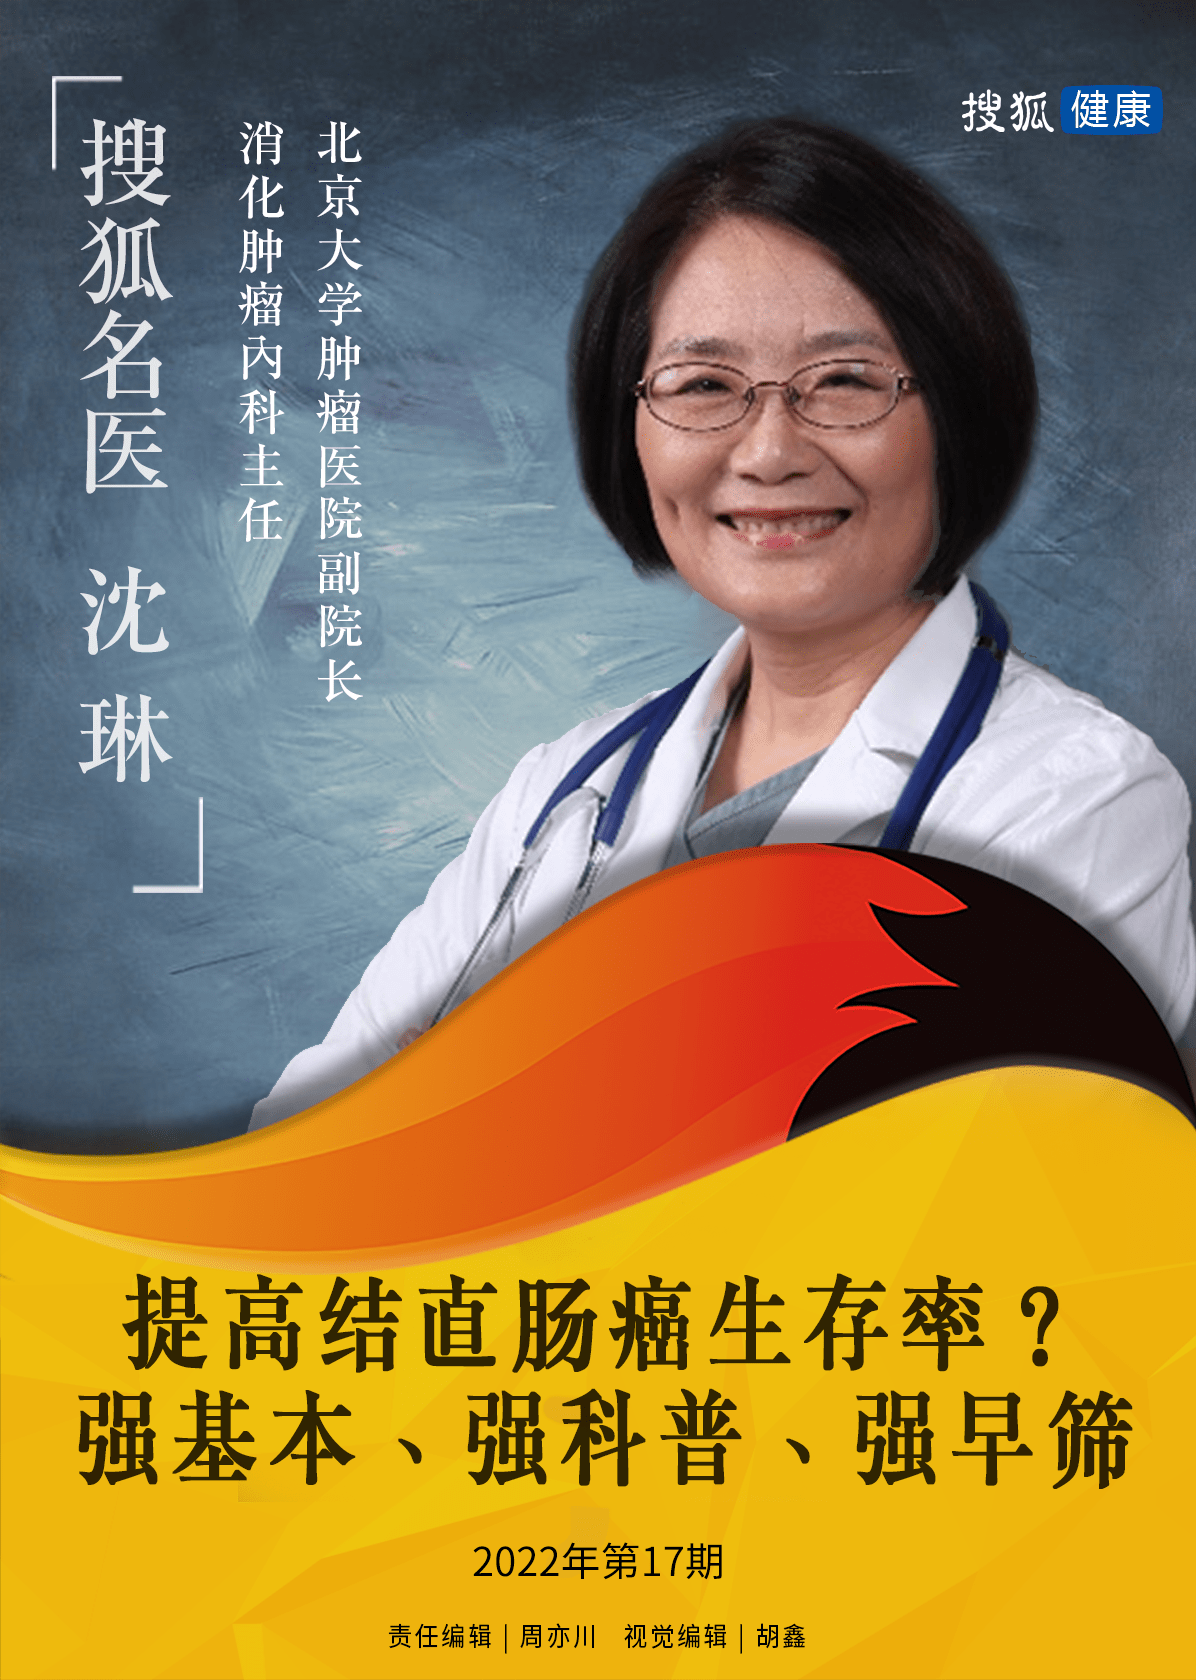 搜狐名医 | 沈琳：提高结直肠癌生存率？强基本、强科普、强早筛